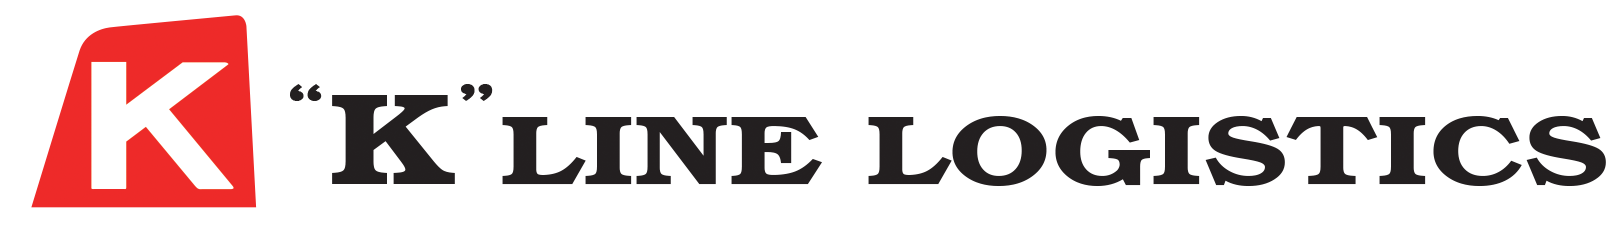 kll-sin-logo-b